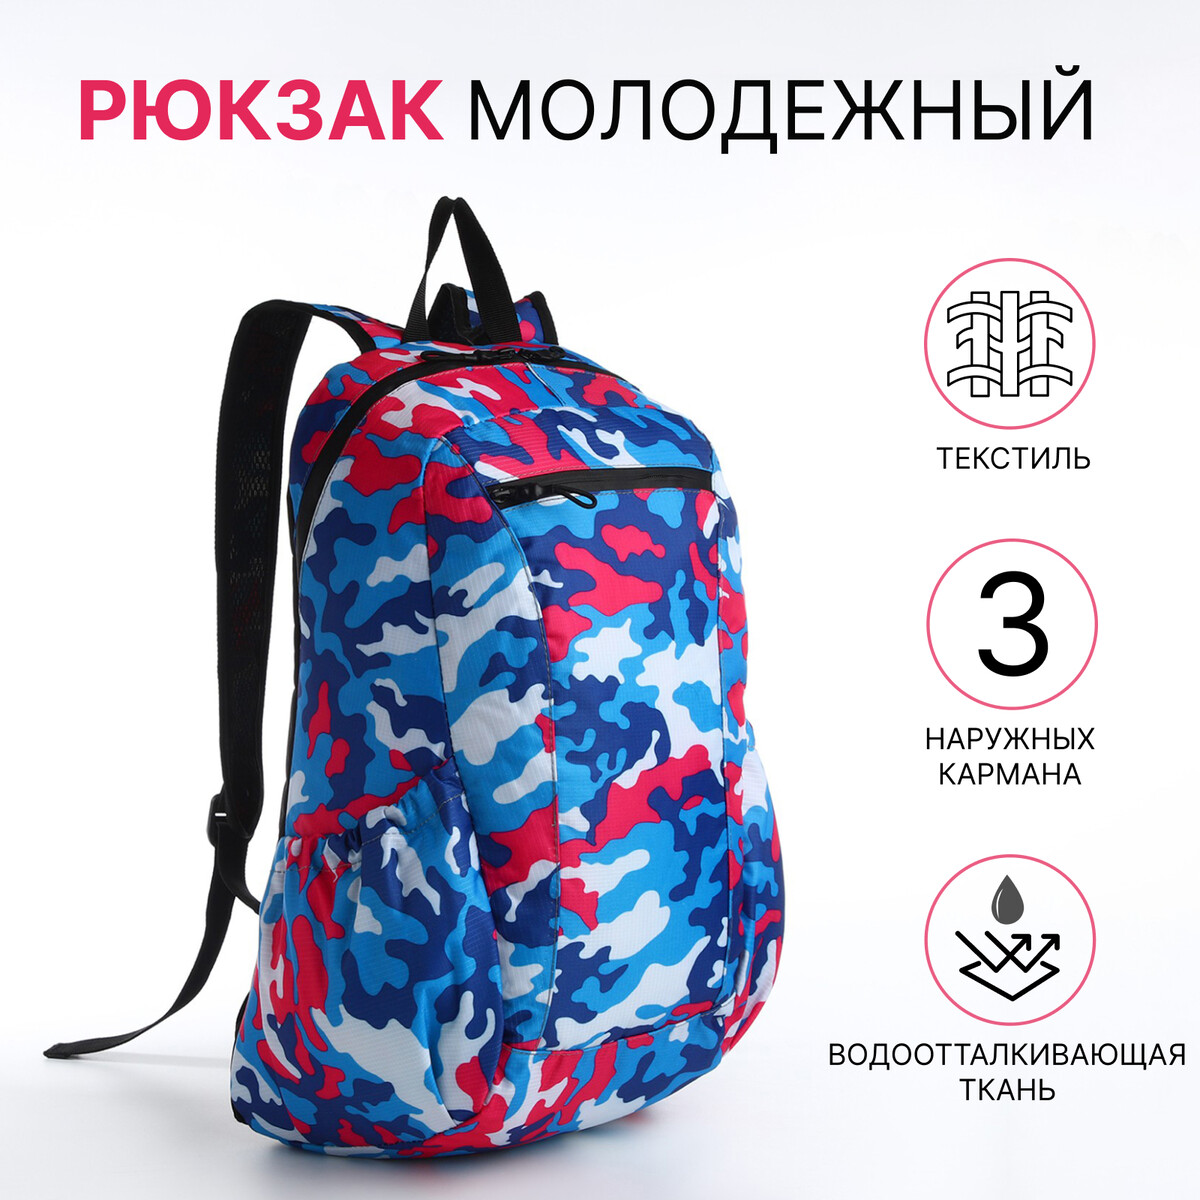 Рюкзак молодежный, водонепроницаемый на молнии, 3 кармана, цвет голубой/розовый рюкзак молодежный на молнии из текстиля 2 кармана розовый